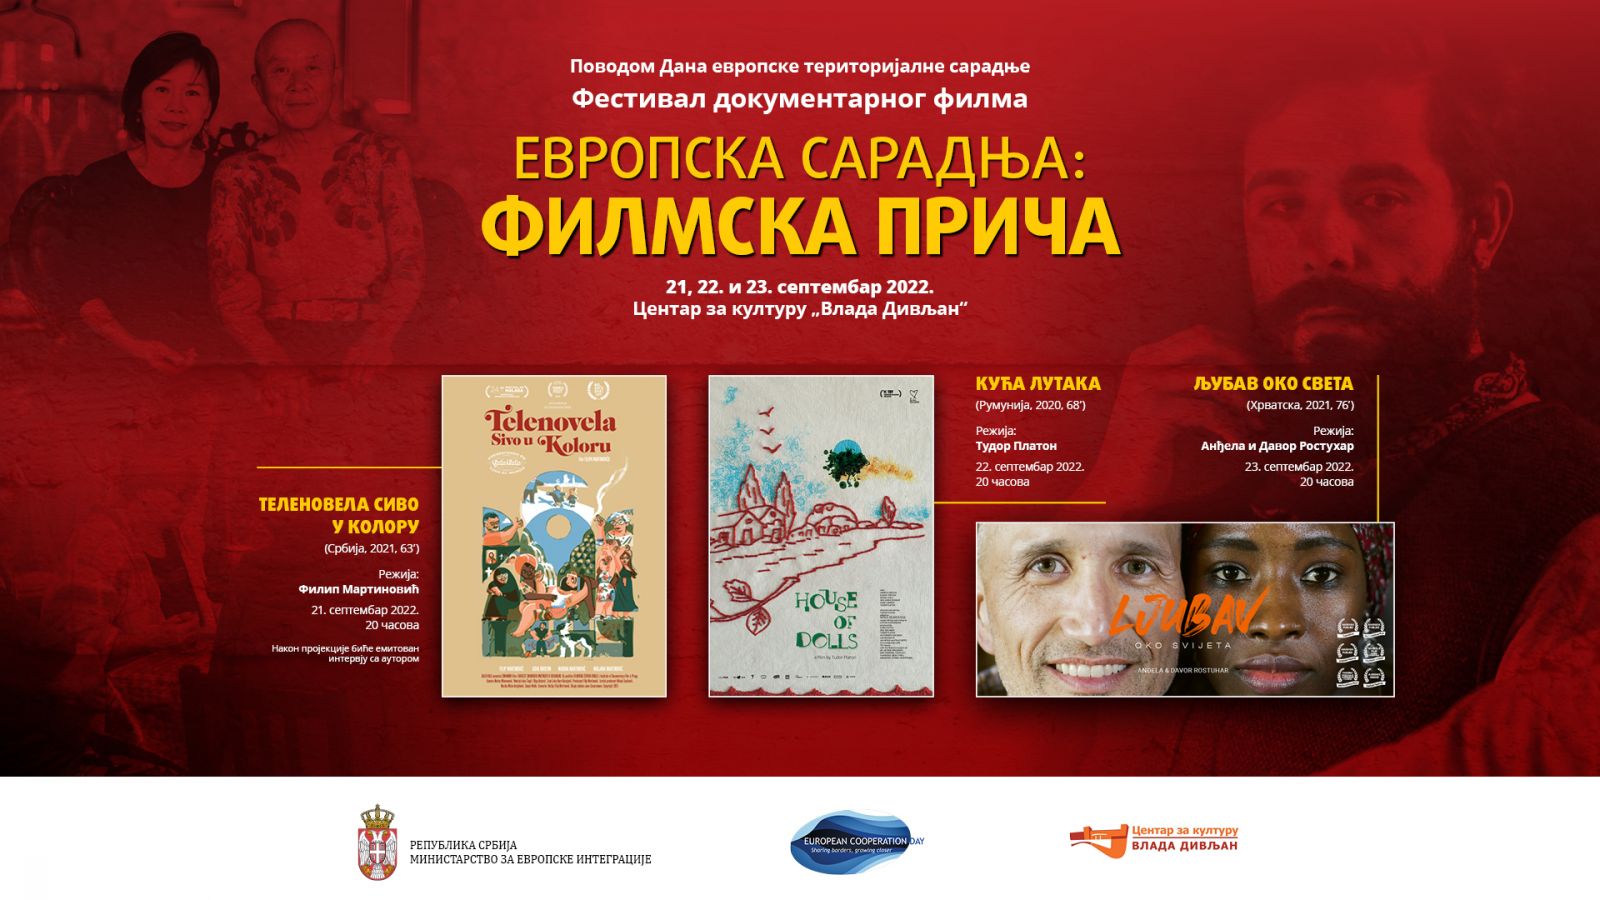 Фестивал документарног филма „Европска сарадња: филмска прича“ од 21. до 23. септембра у Београду